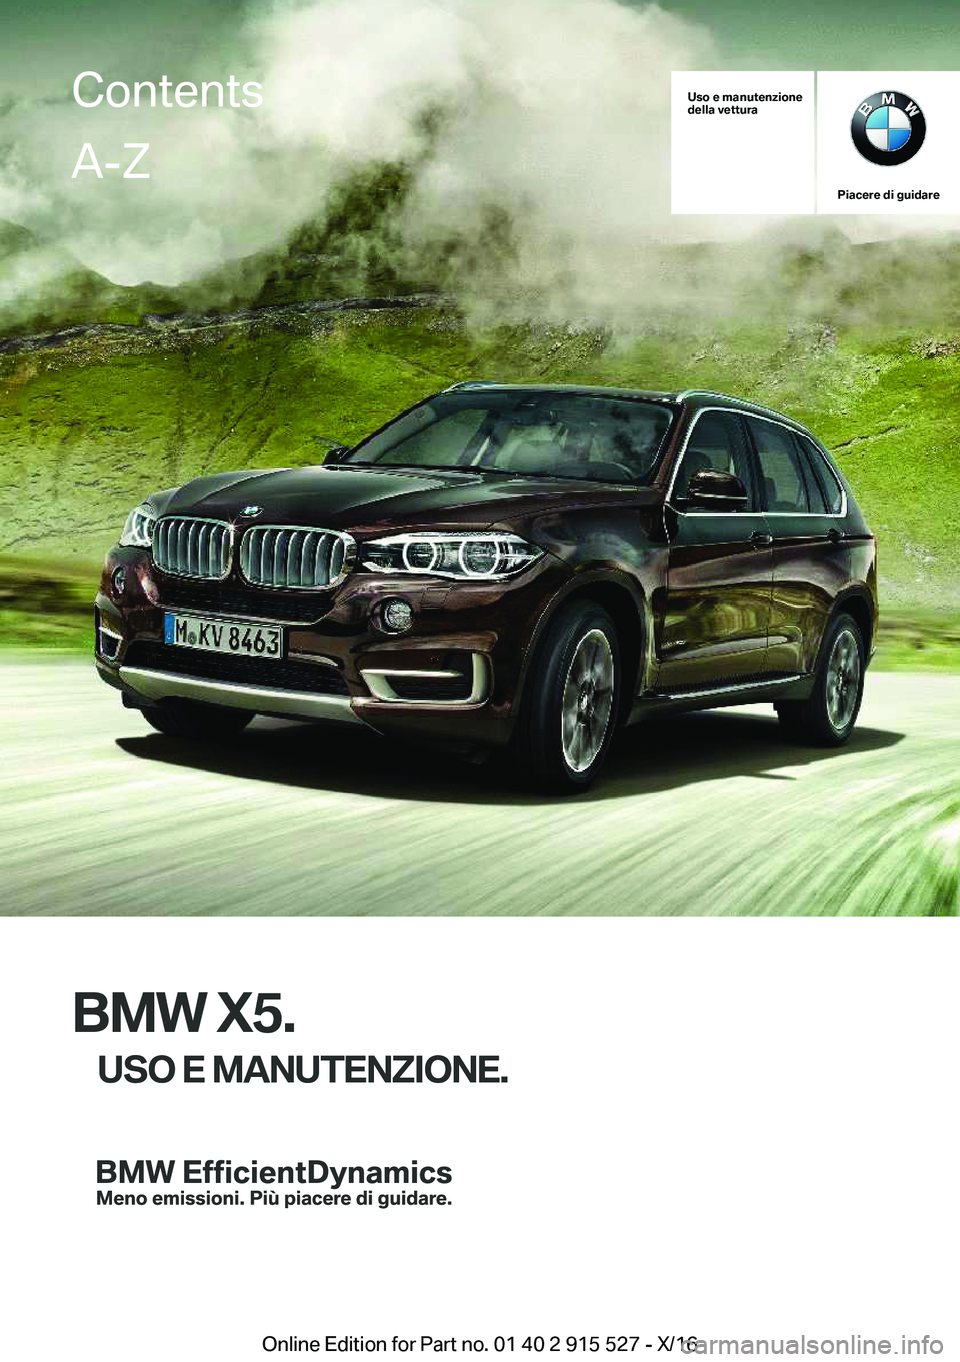 BMW X5 2017  Libretti Di Uso E manutenzione (in Italian) �U�s�o��e��m�a�n�u�t�e�n�z�i�o�n�e
�d�e�l�l�a��v�e�t�t�u�r�a
�P�i�a�c�e�r�e��d�i��g�u�i�d�a�r�e
�B�M�W��X�5�.
�U�S�O��E��M�A�N�U�T�E�N�Z�I�O�N�E�.
�C�o�n�t�e�n�t�s�A�-�Z
�O�n�l�i�n�e� �E�d�i�t